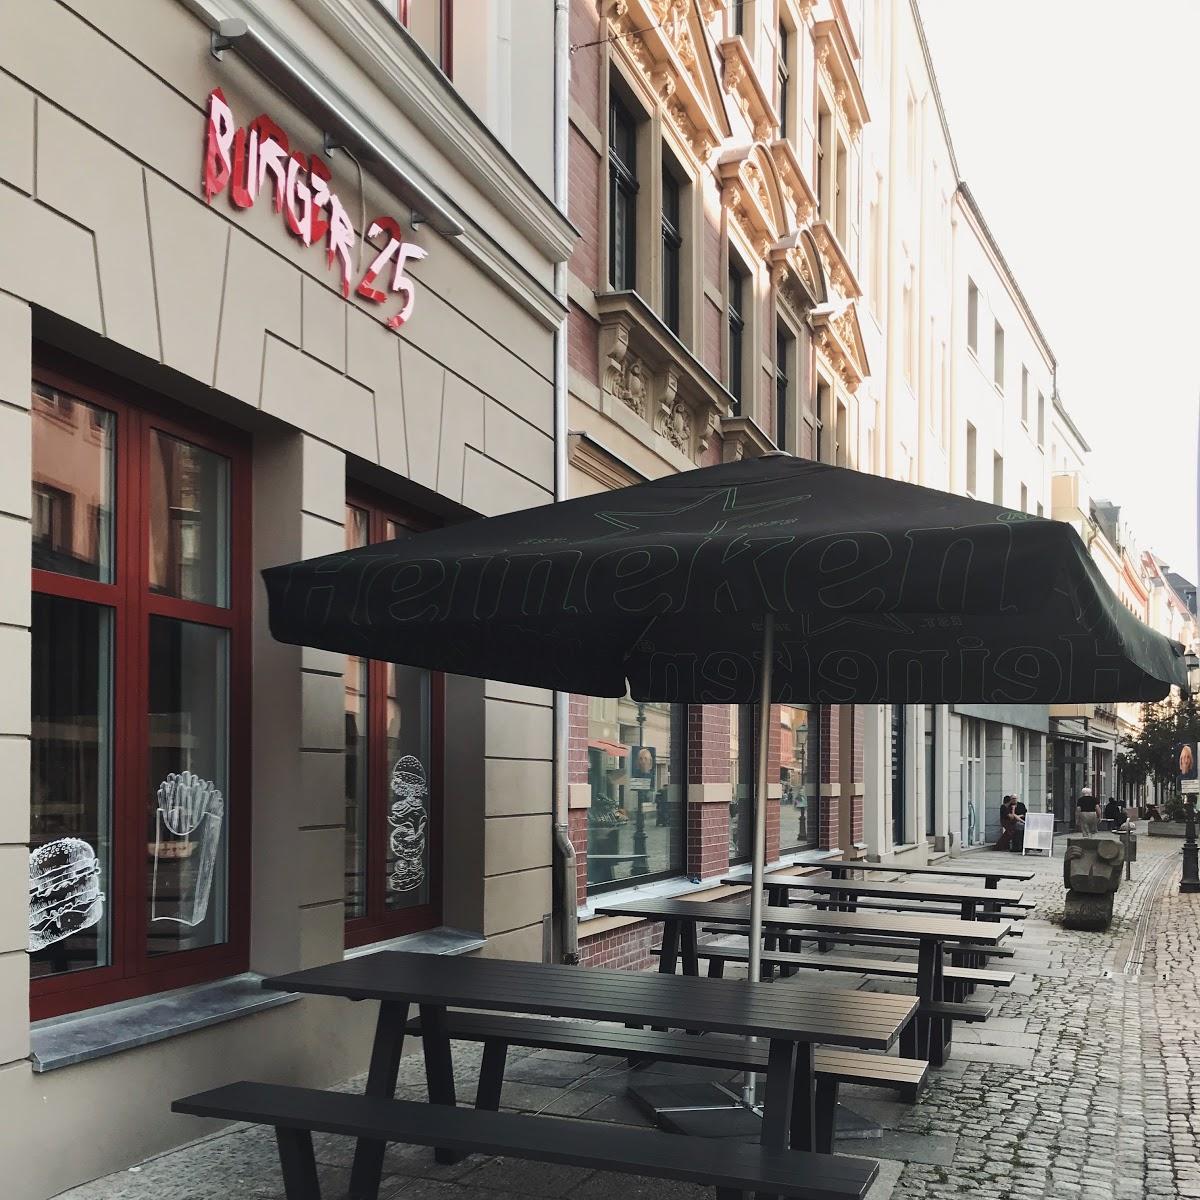 Restaurant "Burger 25" in Zwickau